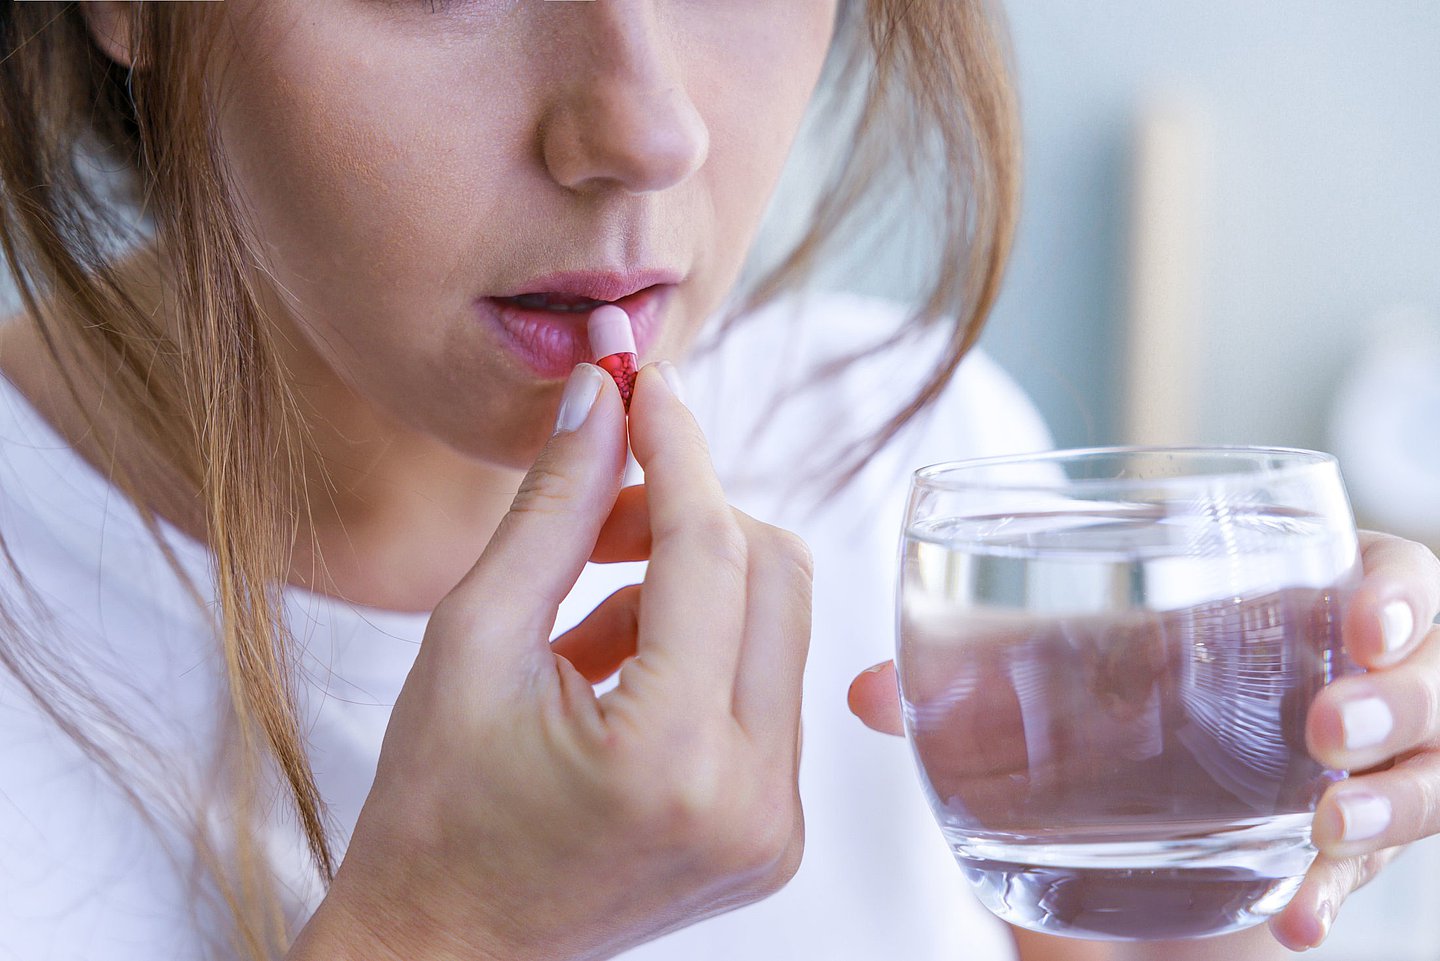 Foto: Eine Frau führt eine Tablette zum Mund und hält ein Glas Wasser in der Hand.